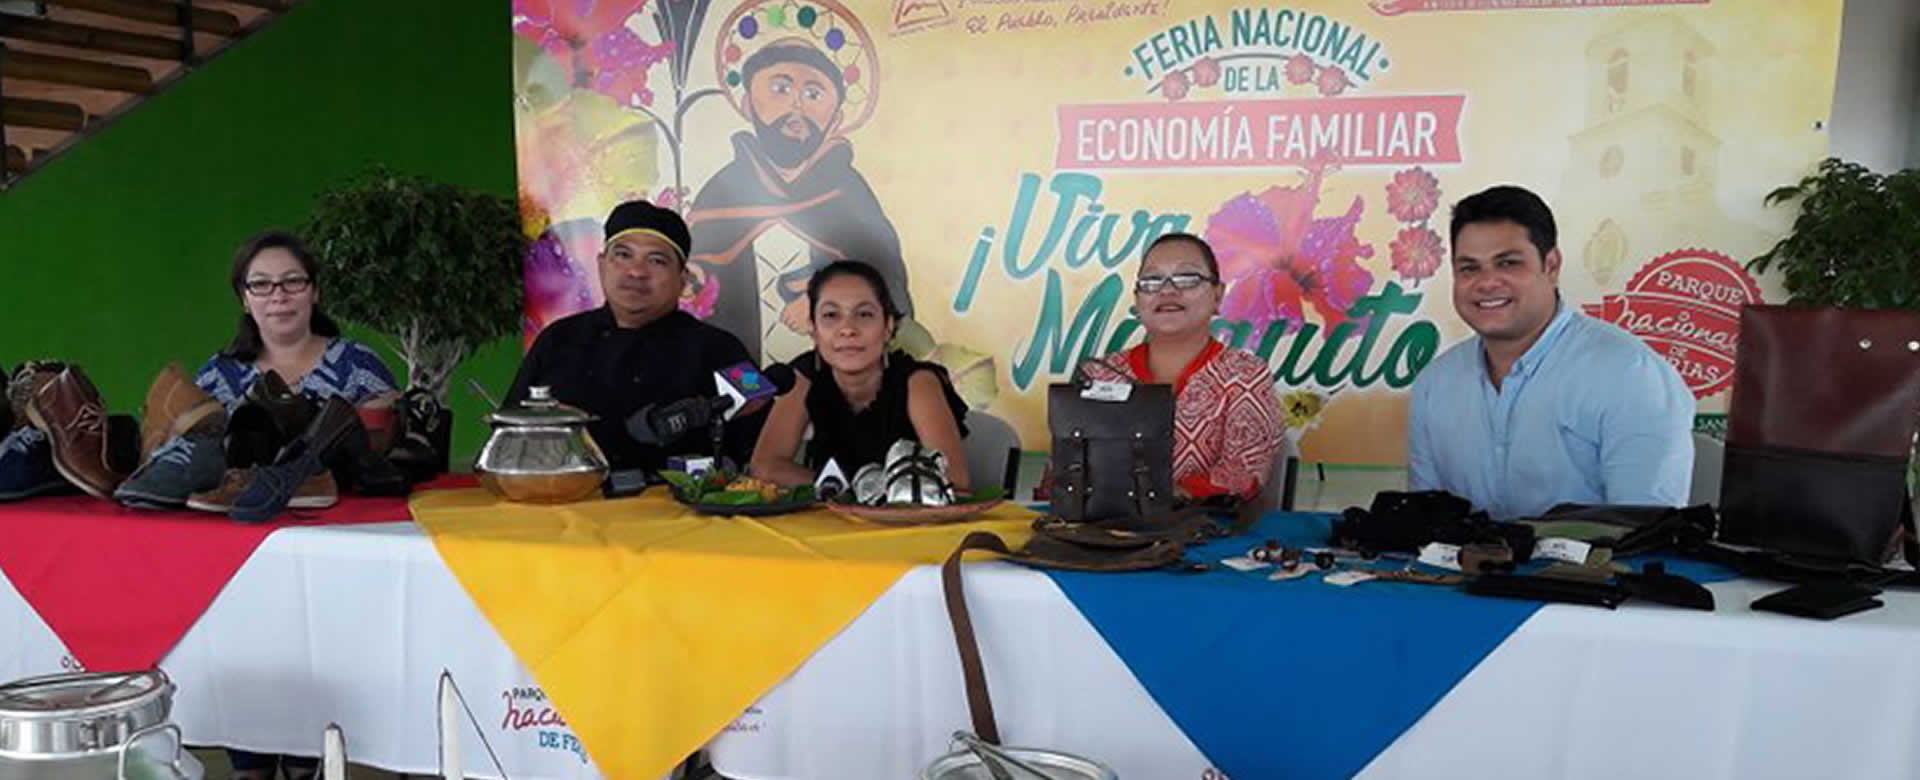 Parque Nacional de Ferias continúa celebrando a Santo Domingo de Guzmán